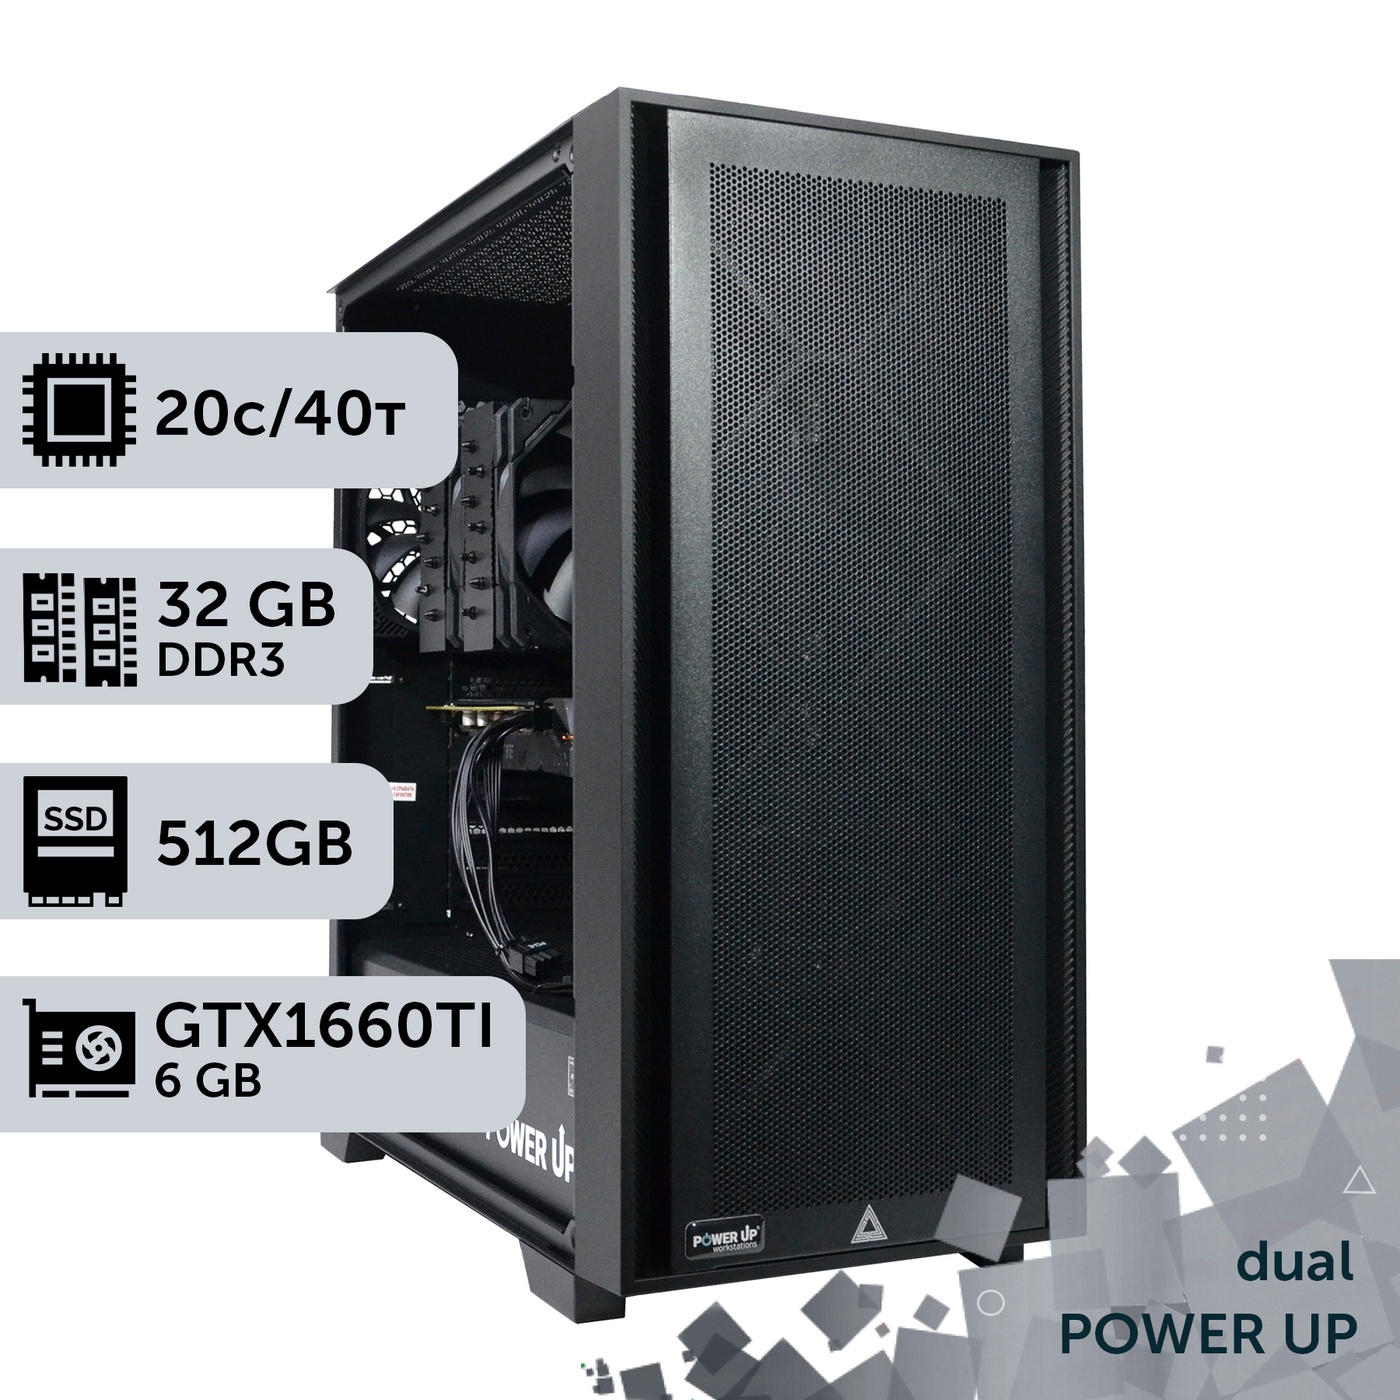 Двухпроцессорная рабочая станция PowerUp #290 Xeon E5 2690 v2 x2/32 GB/SSD 512GB/GeForce GTX 1660Ti 6GB